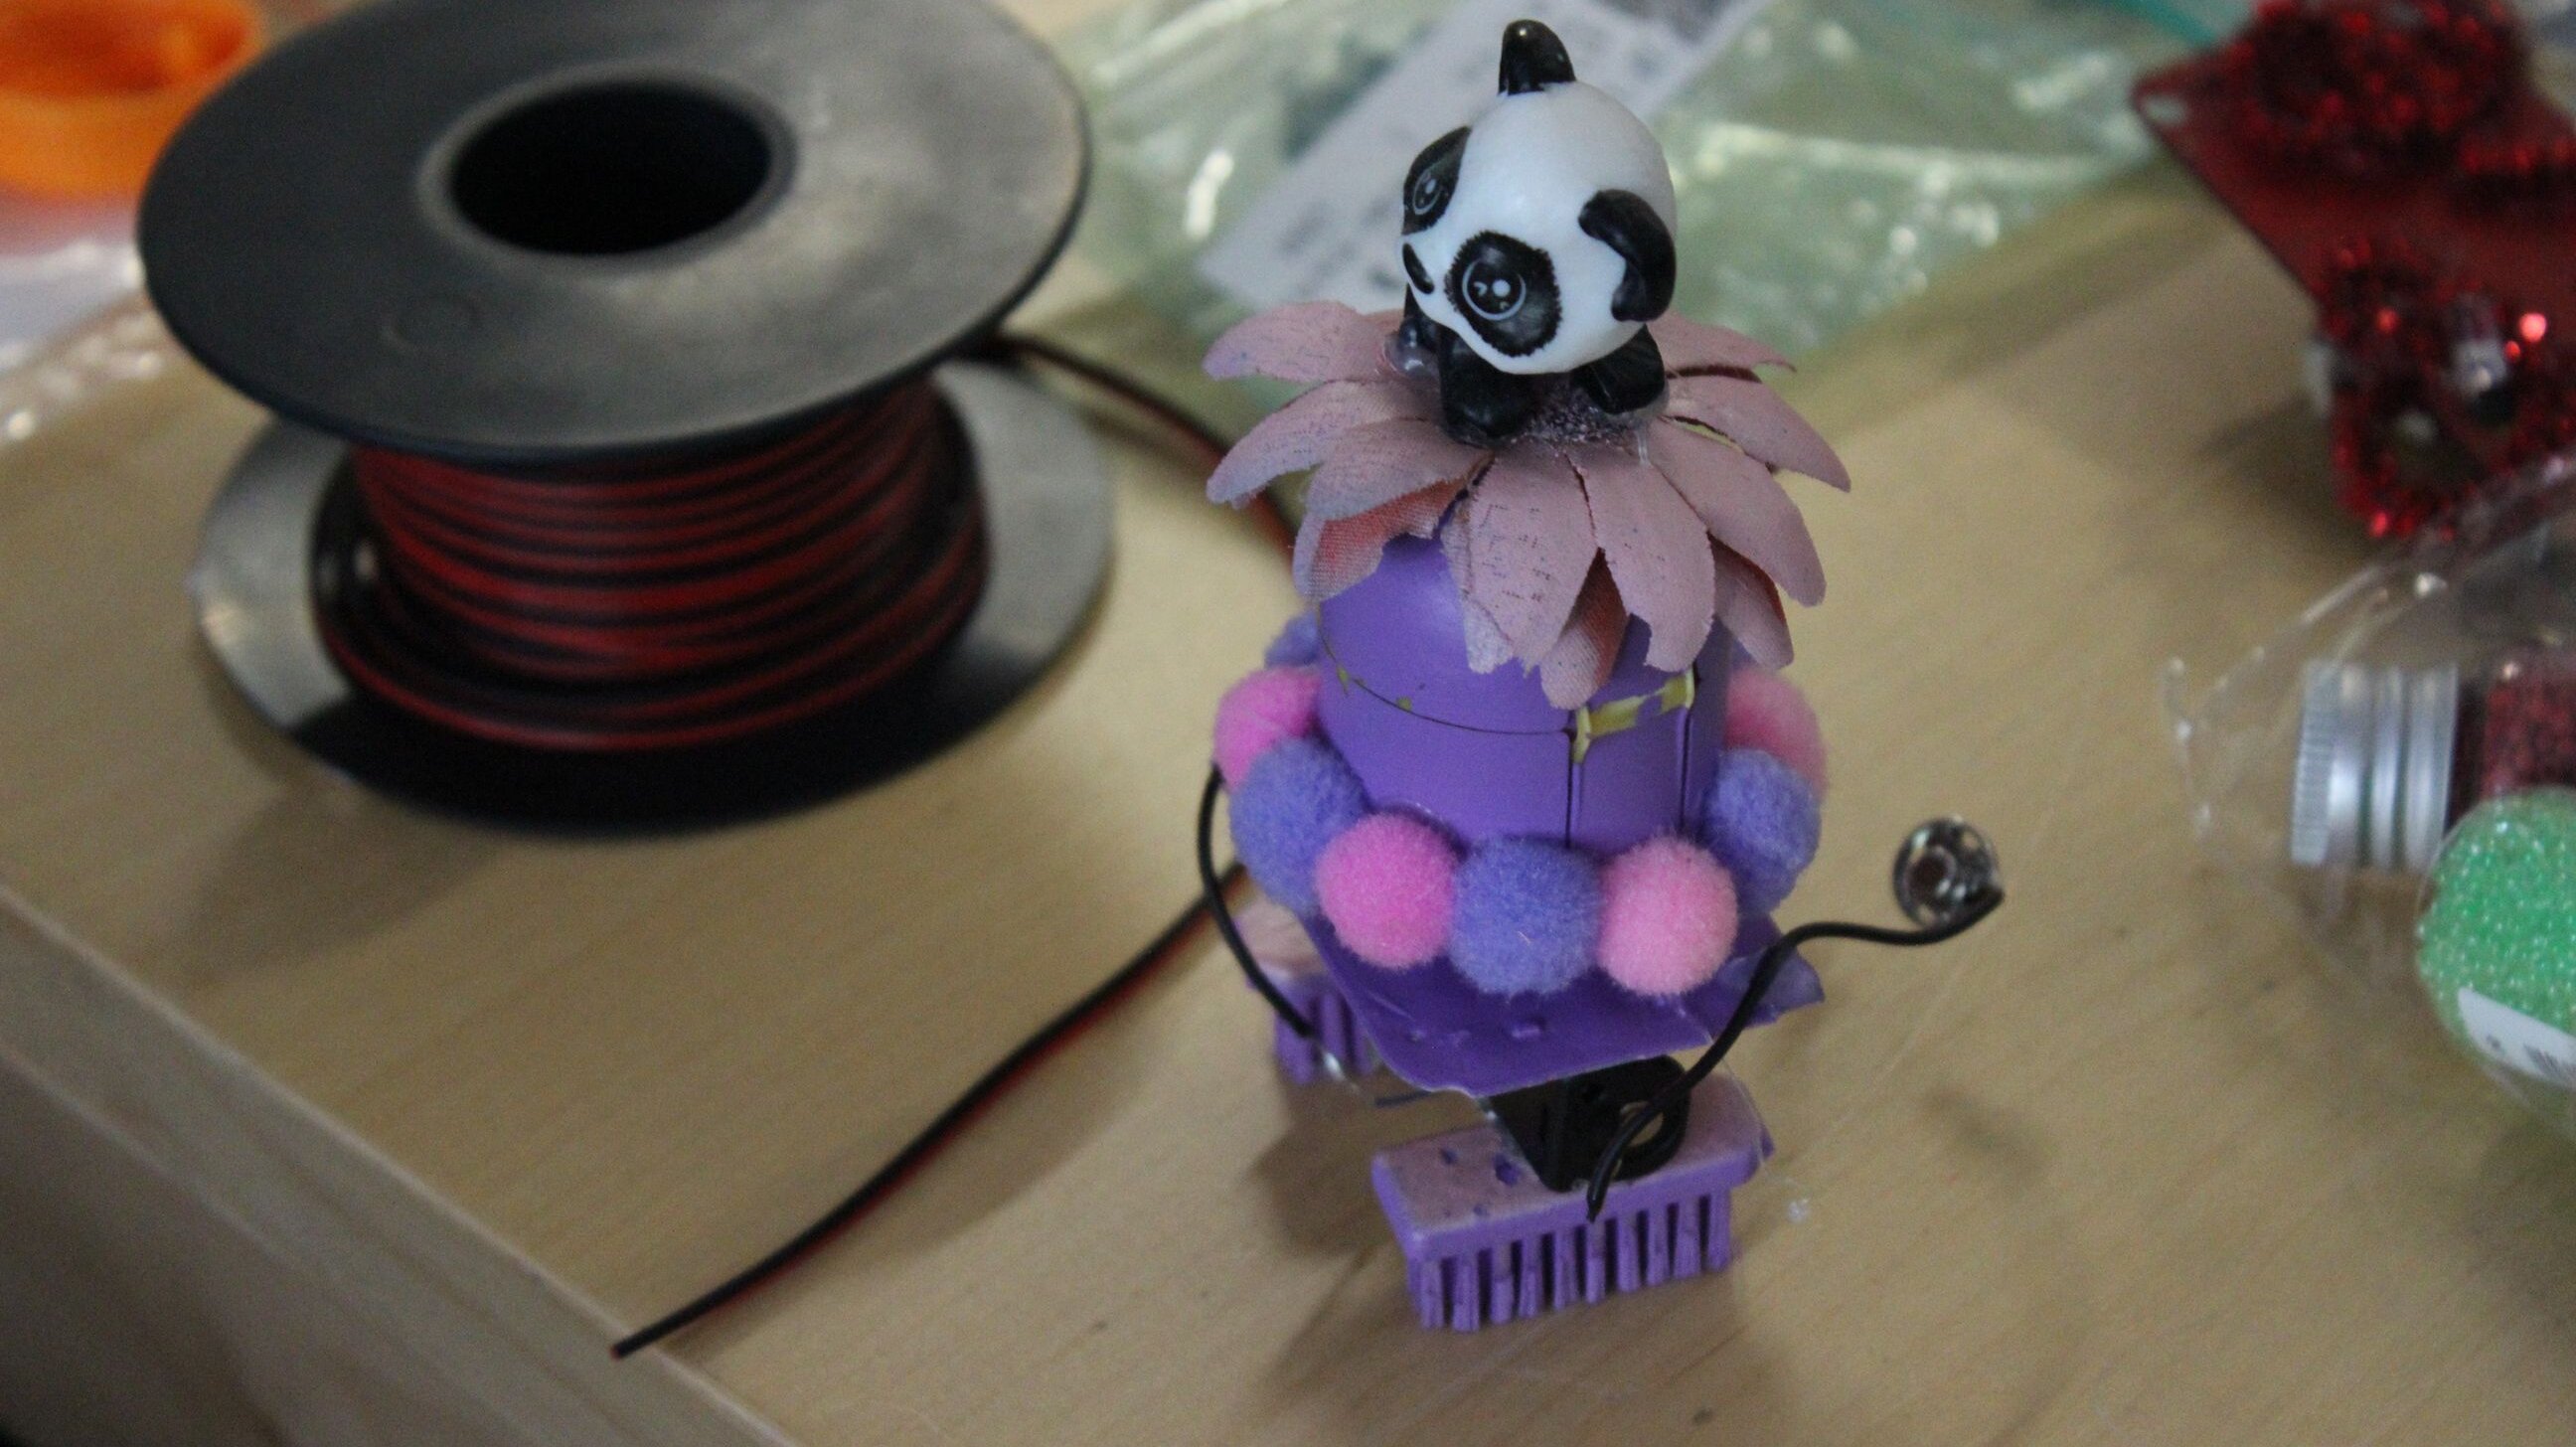 Bürstenroboter in lila Farben mit einer Pandabären-Figur auf der Spitze